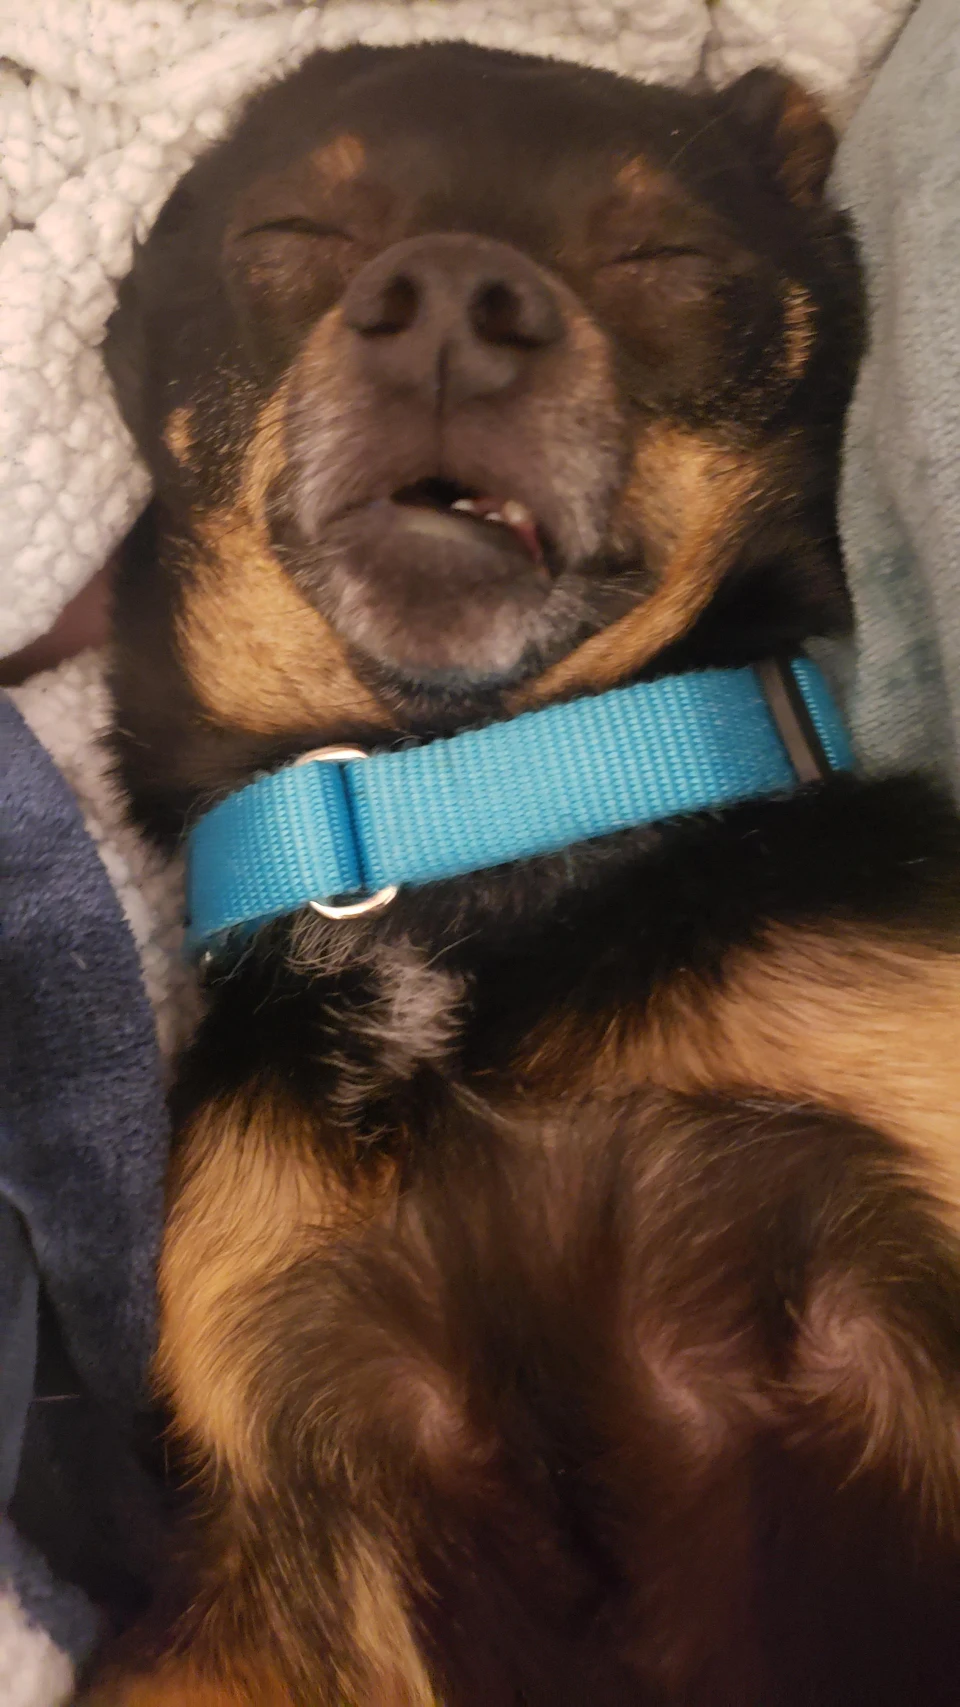 my dog Finn sleeping with a goofy face.